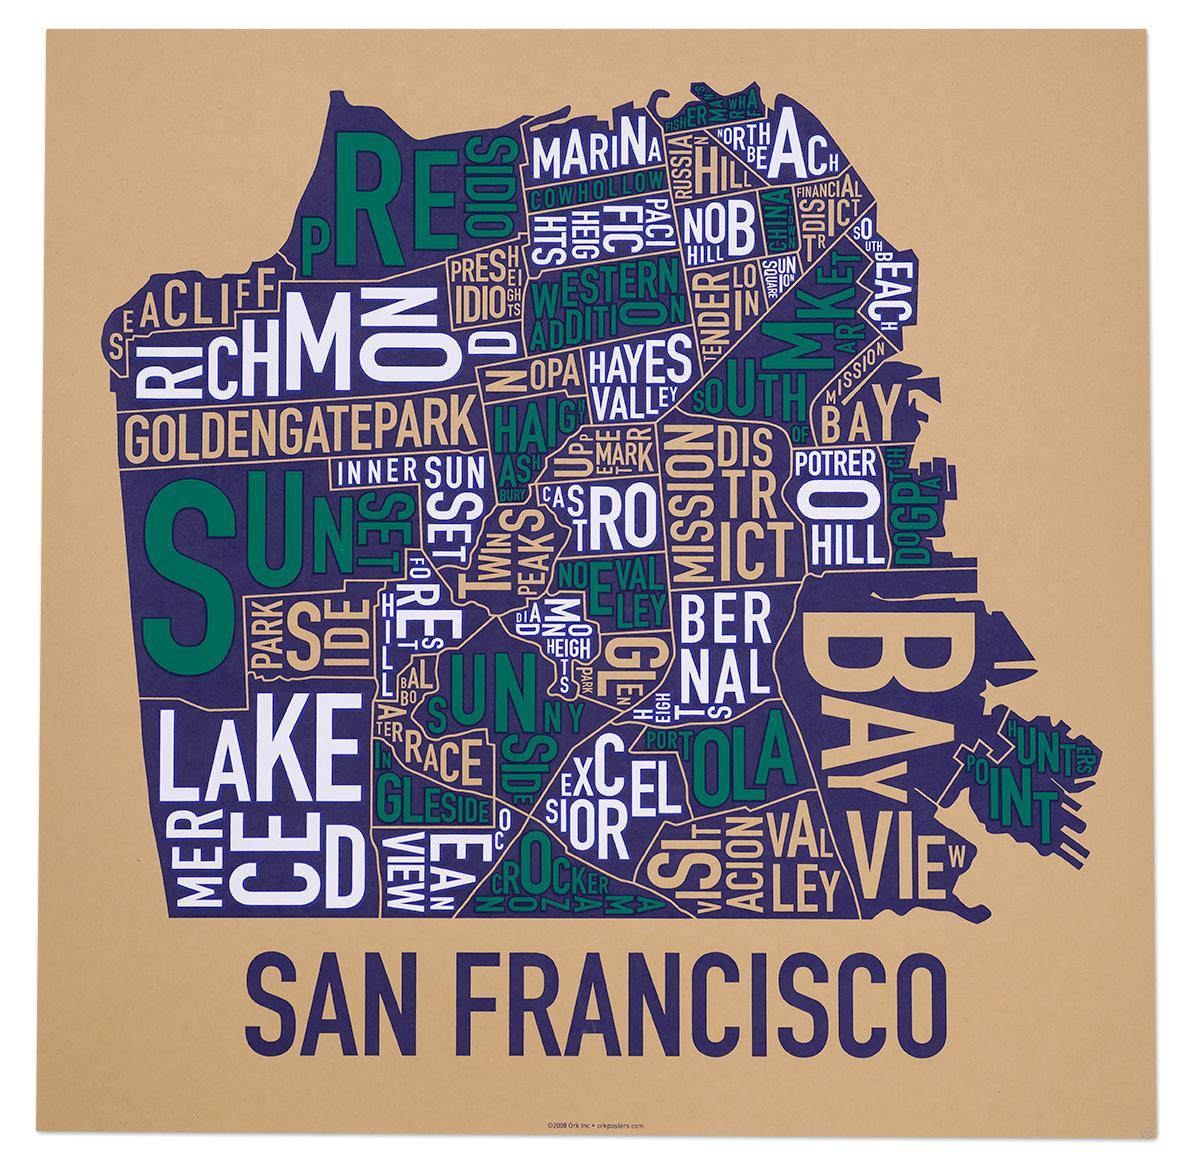 San Francisco kapitbahayan mapa poster